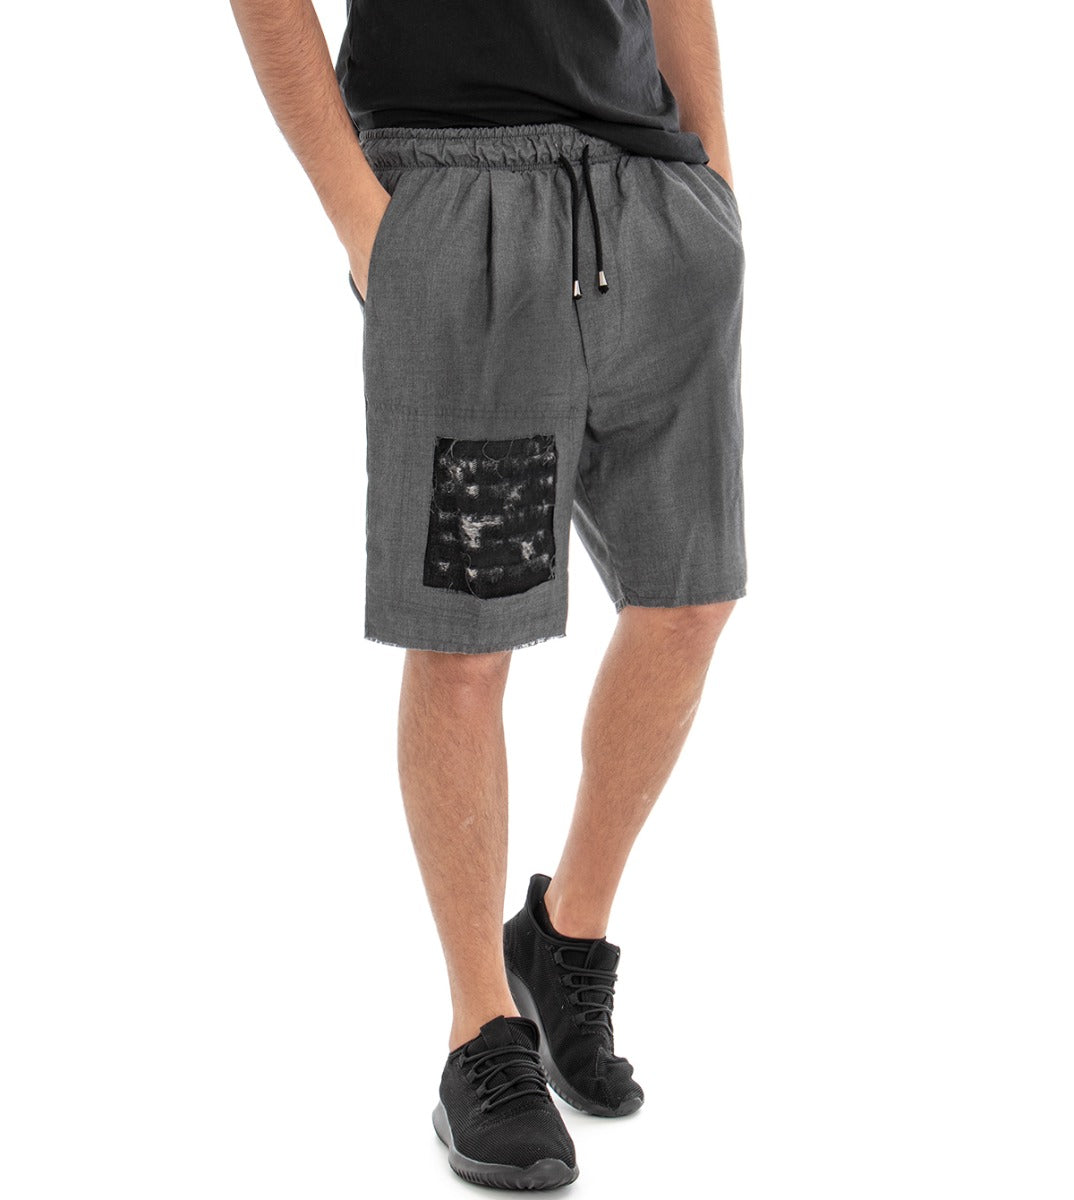 Bermuda Pantaloncino Uomo Tuta Elastico Grigio Scuro GIOSAL-PC1287A